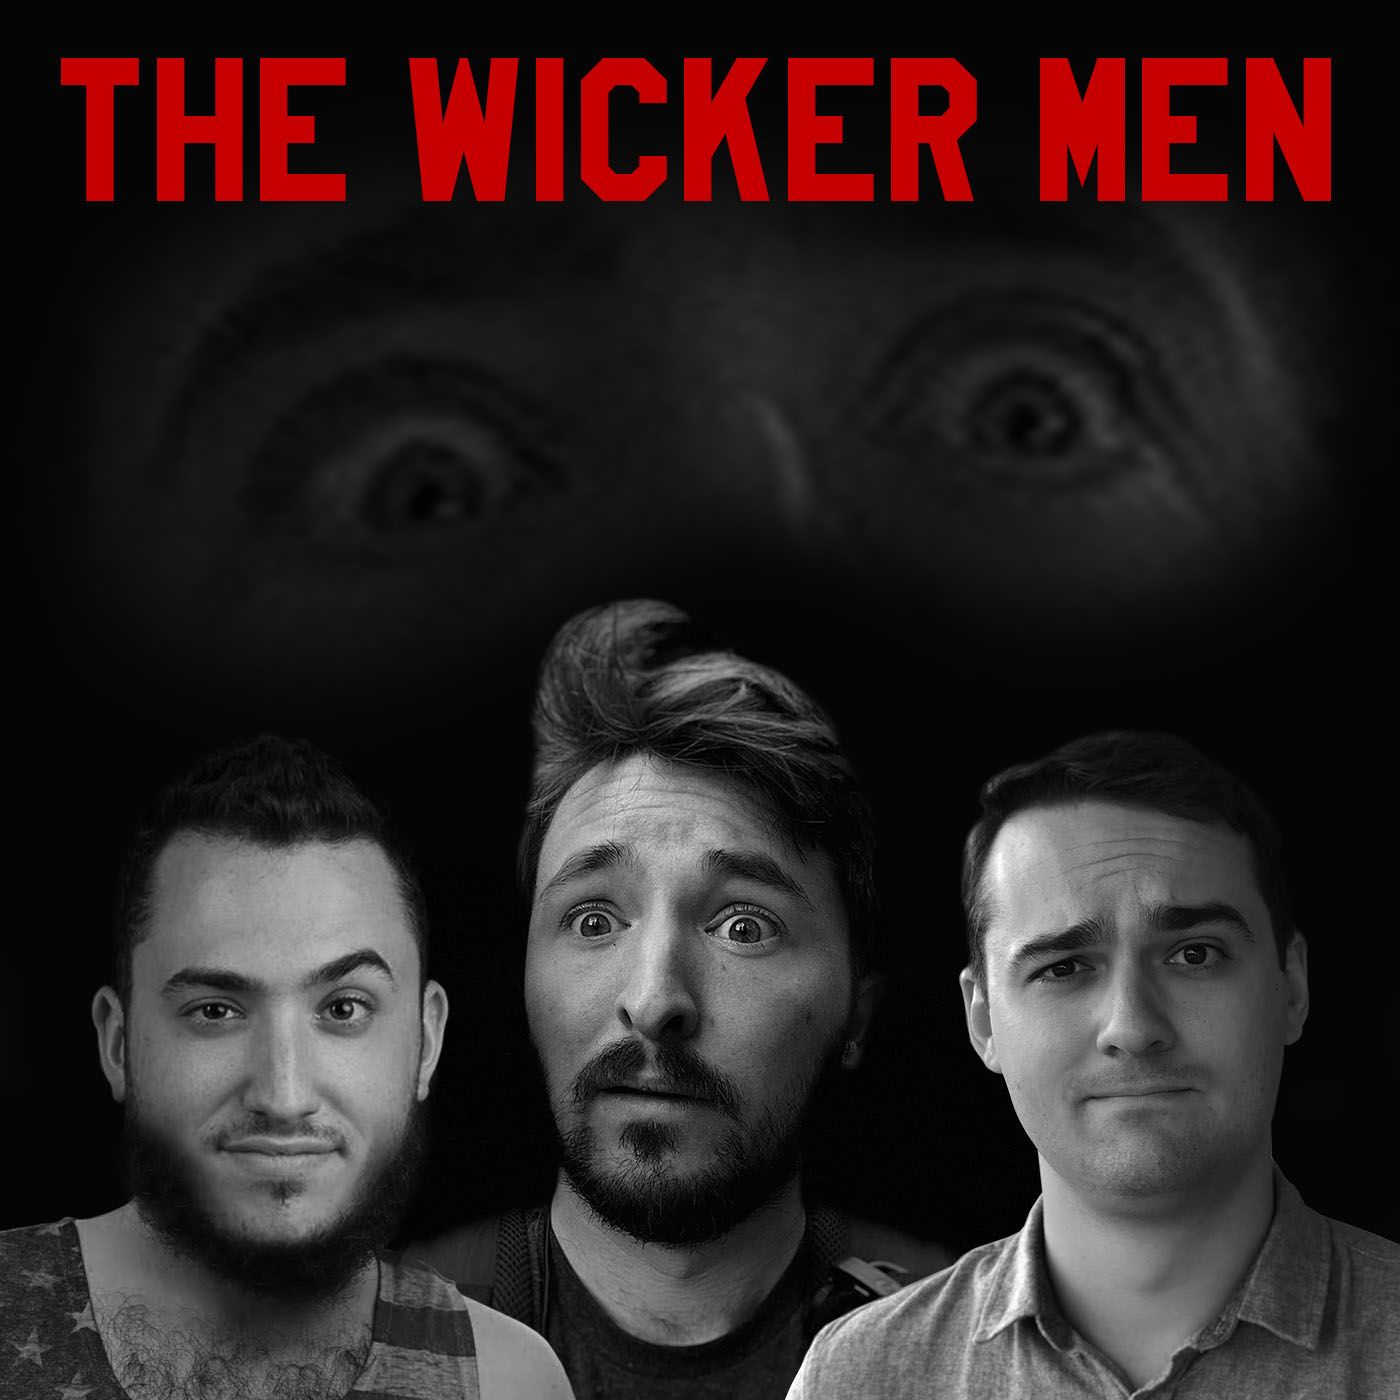 The Wicker Men